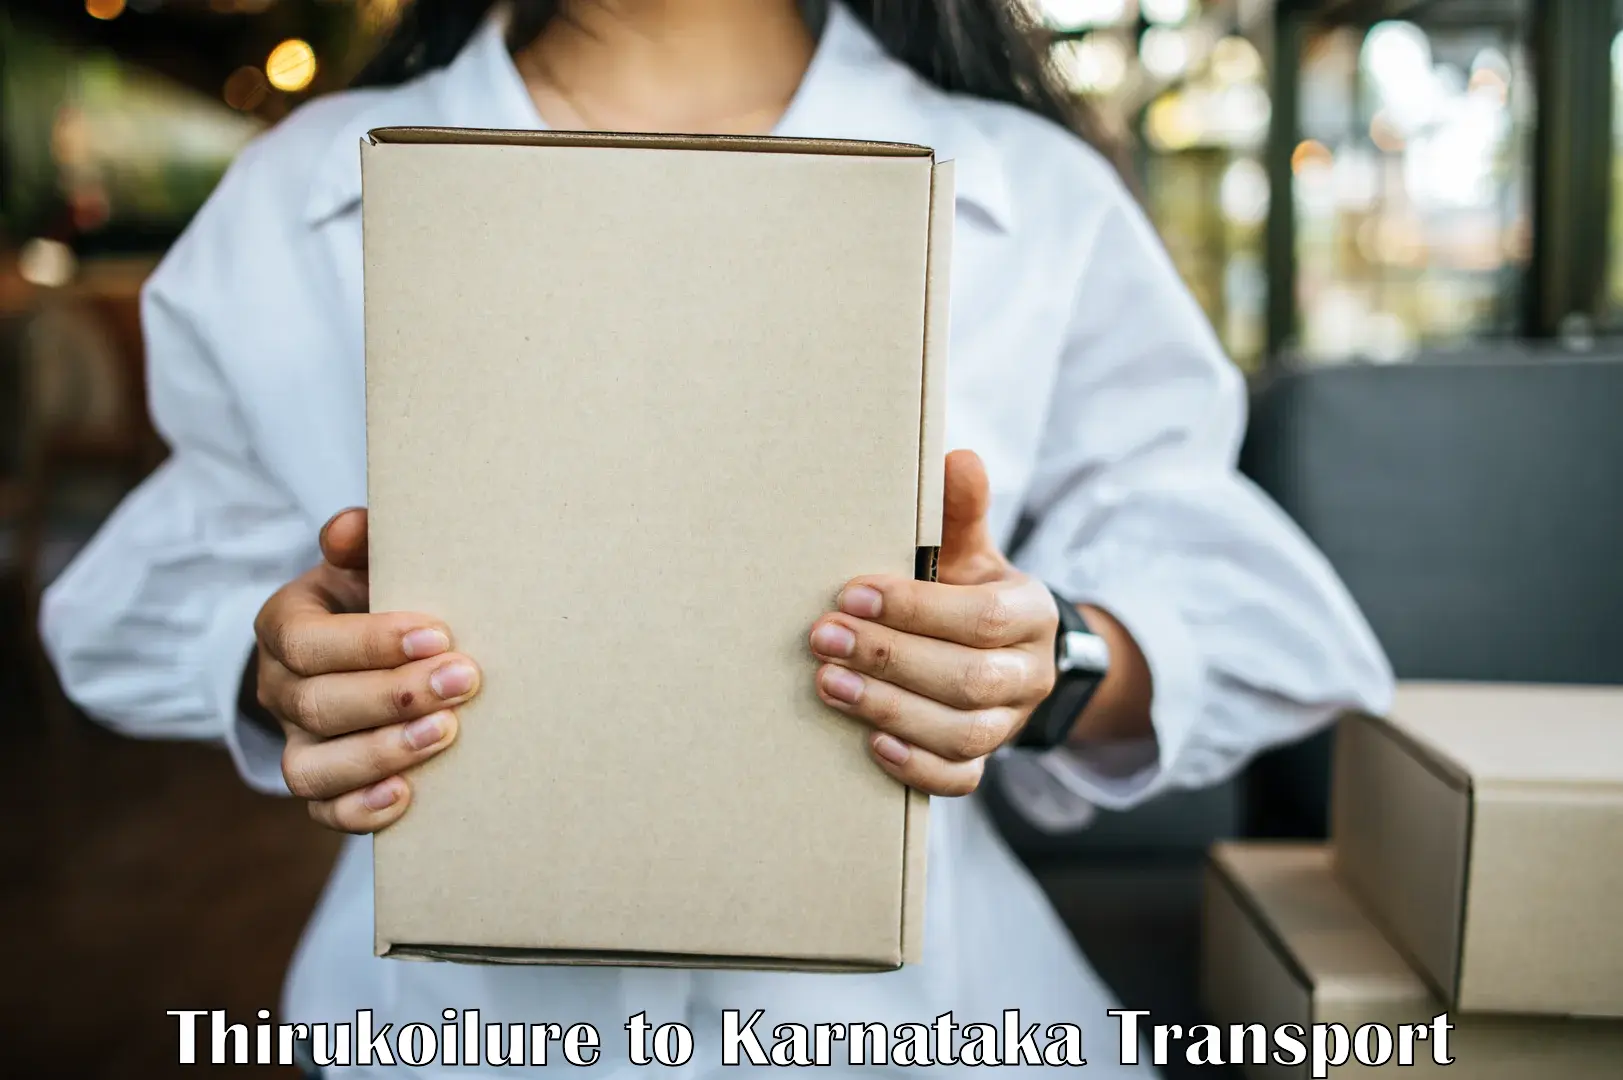 Online transport booking Thirukoilure to Hosanagar